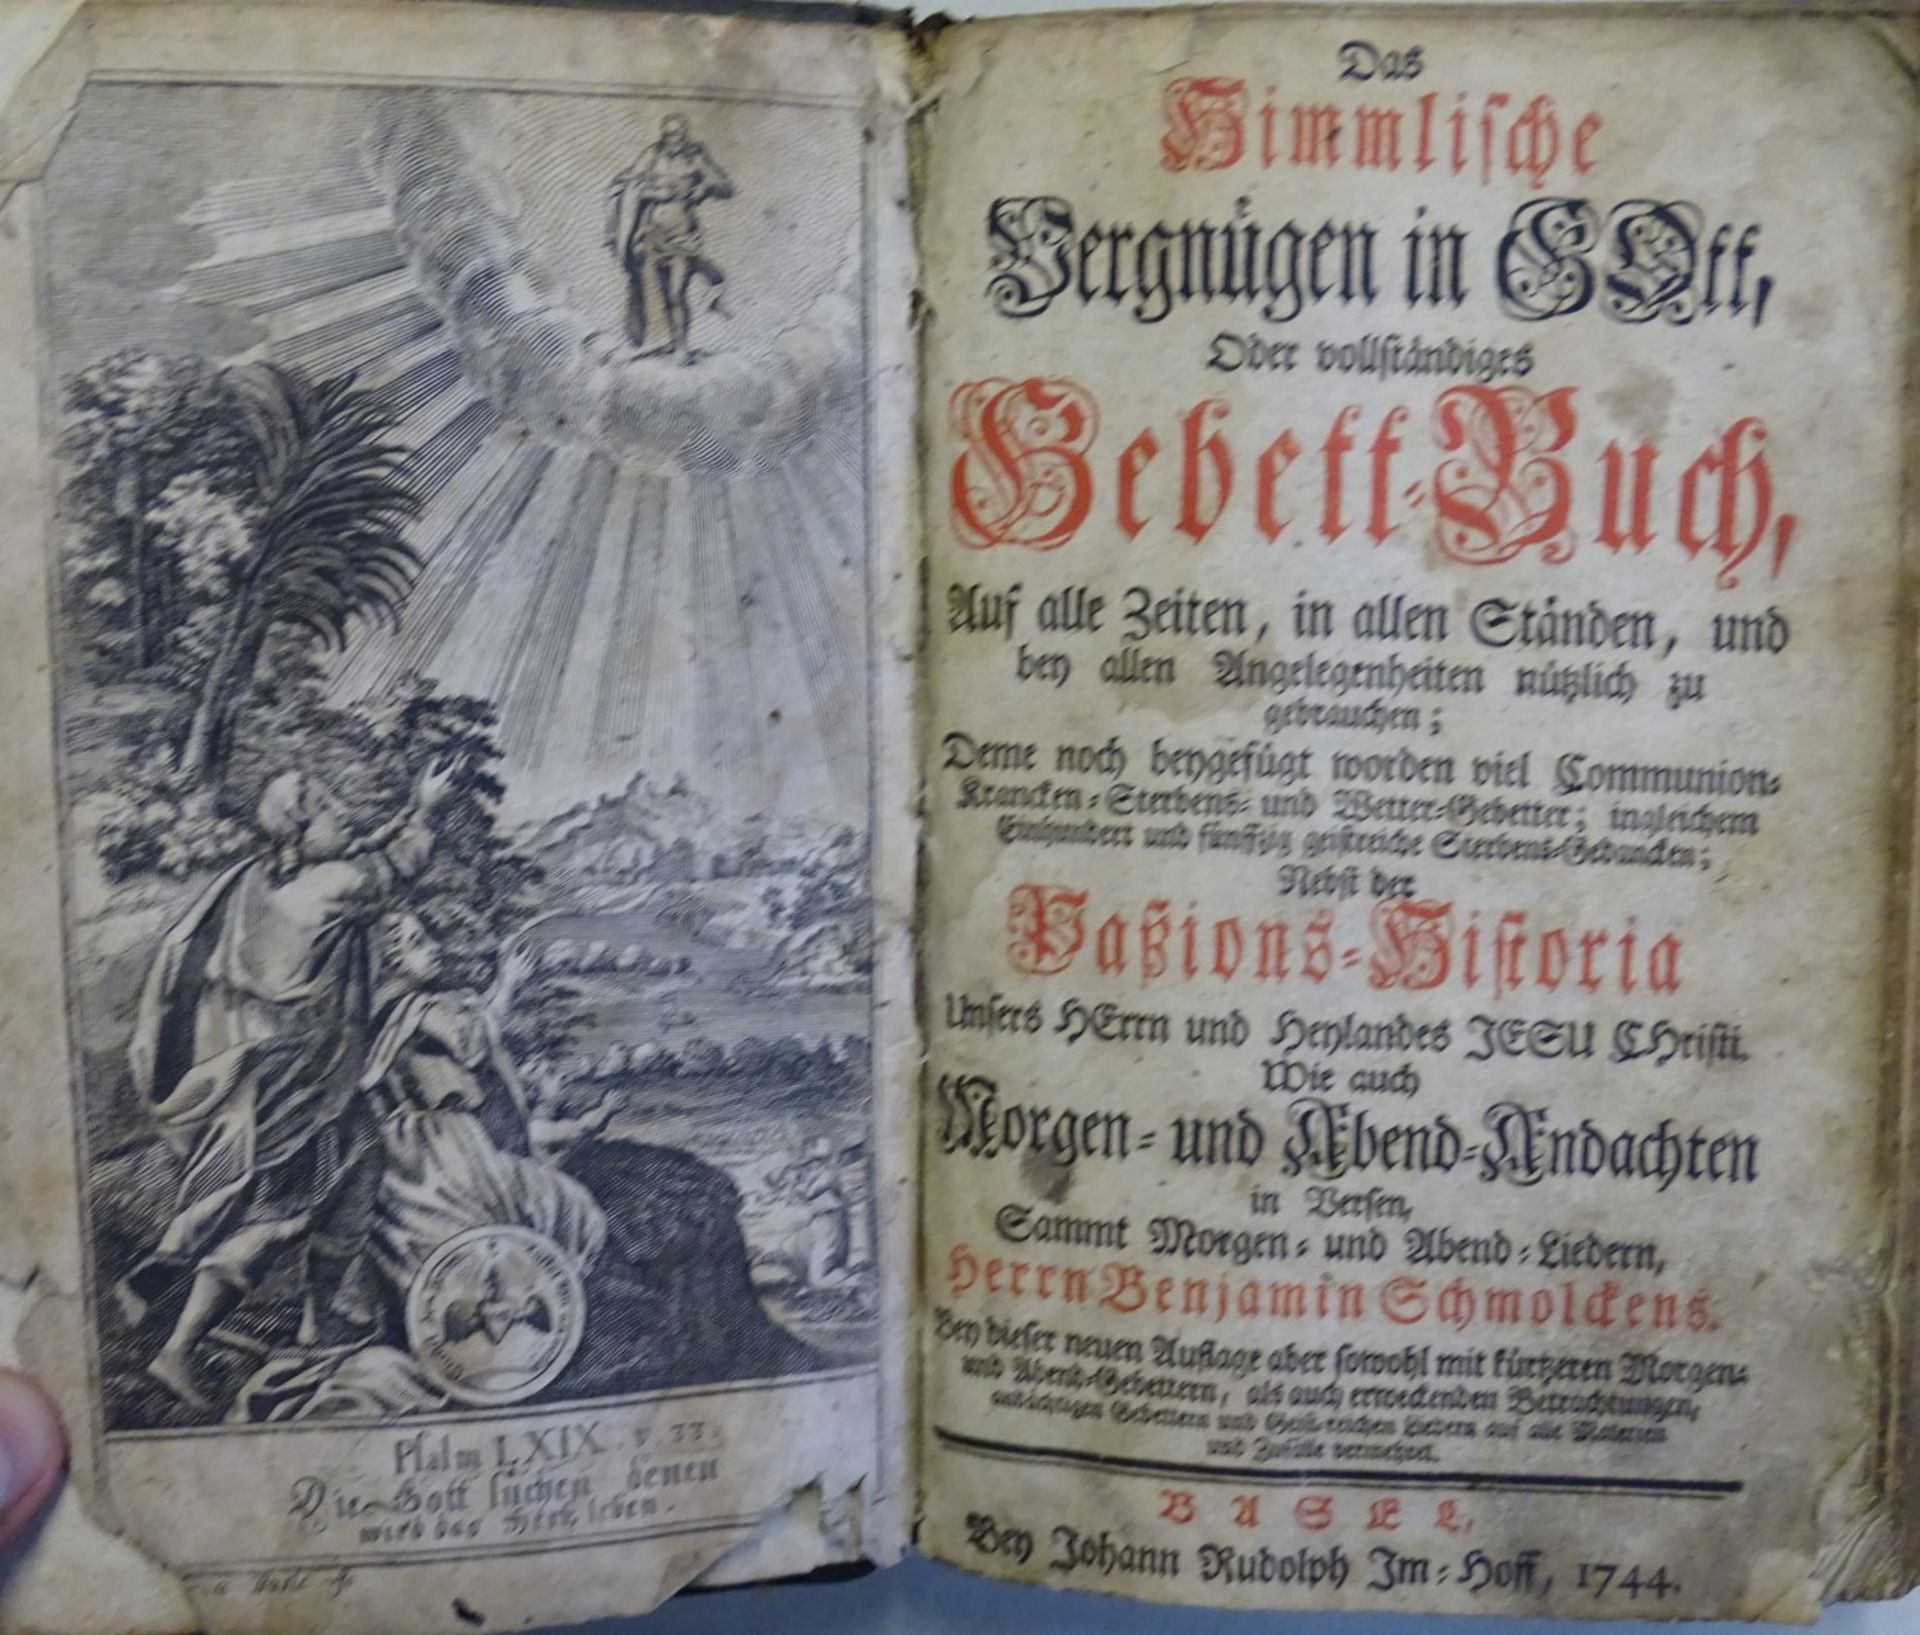 Das himmlische Vergnügen in Gott" 1744 Vollständiges Gebetbuch auf alle Zeiten, für alle Stände - Bild 2 aus 8